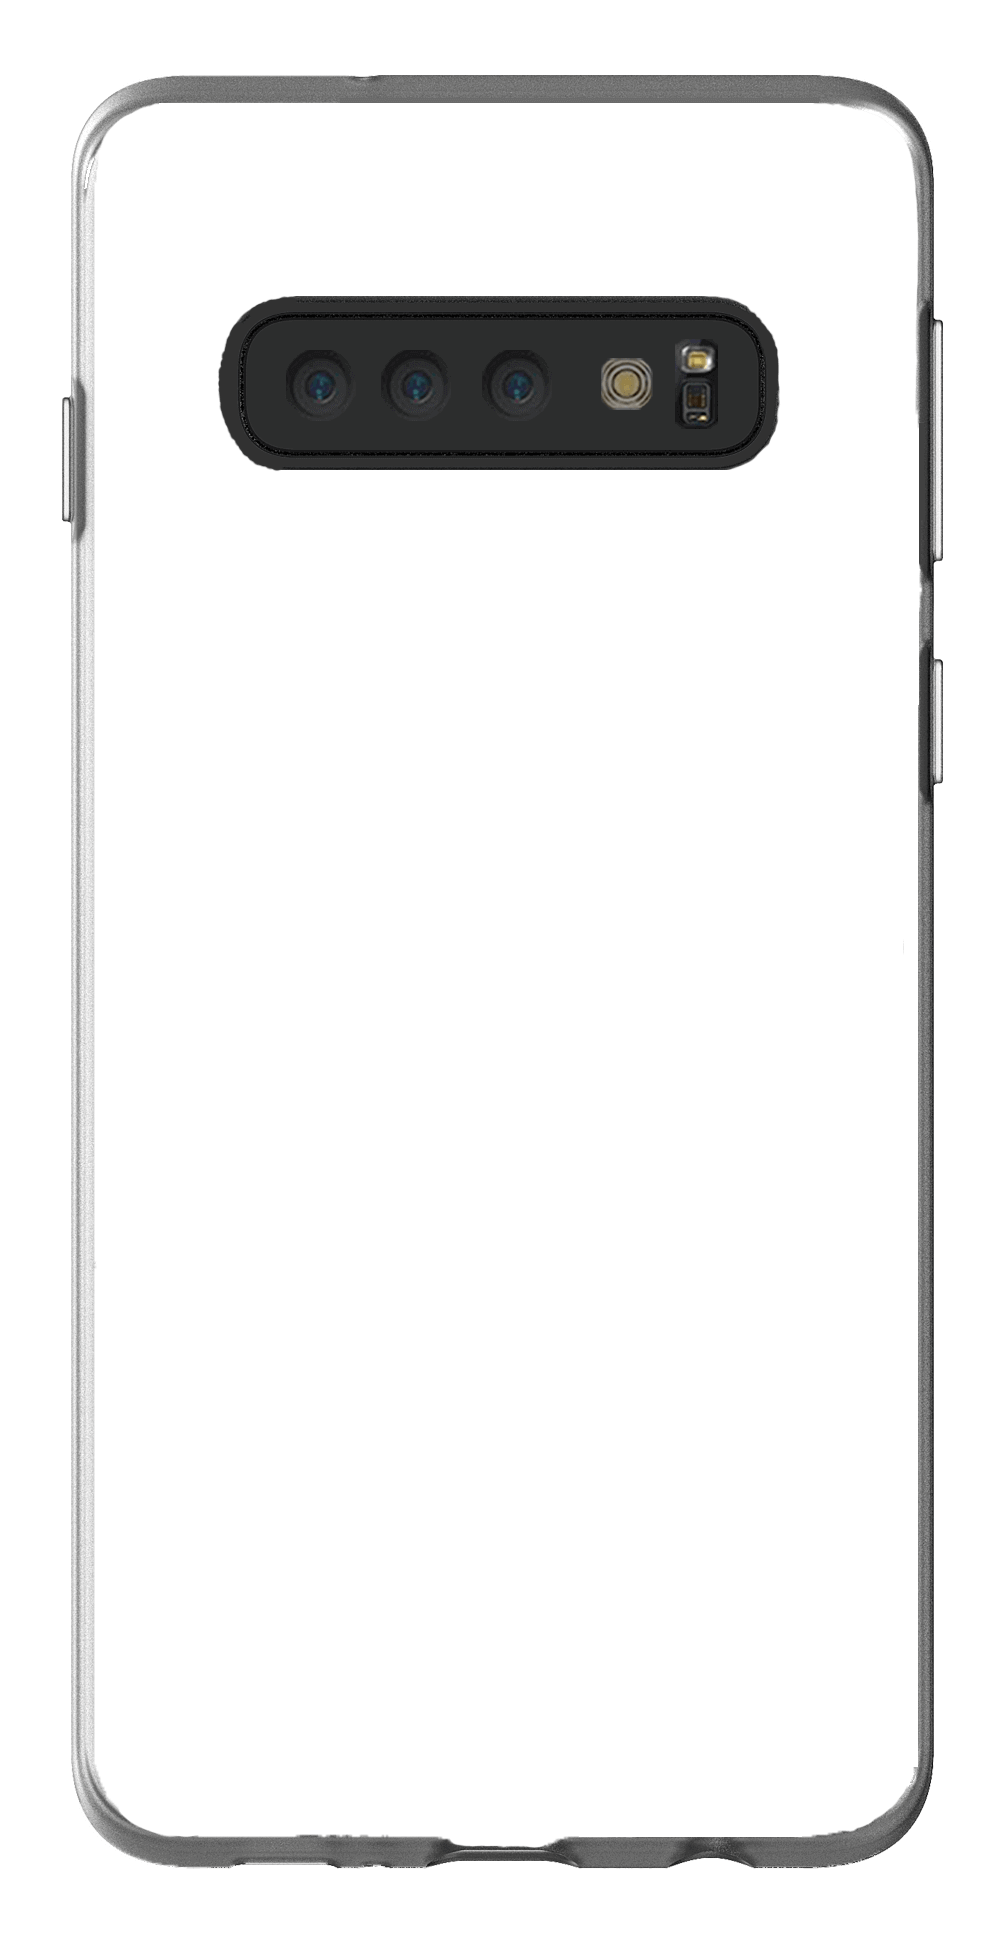 Samsung s10 flexicase overlay